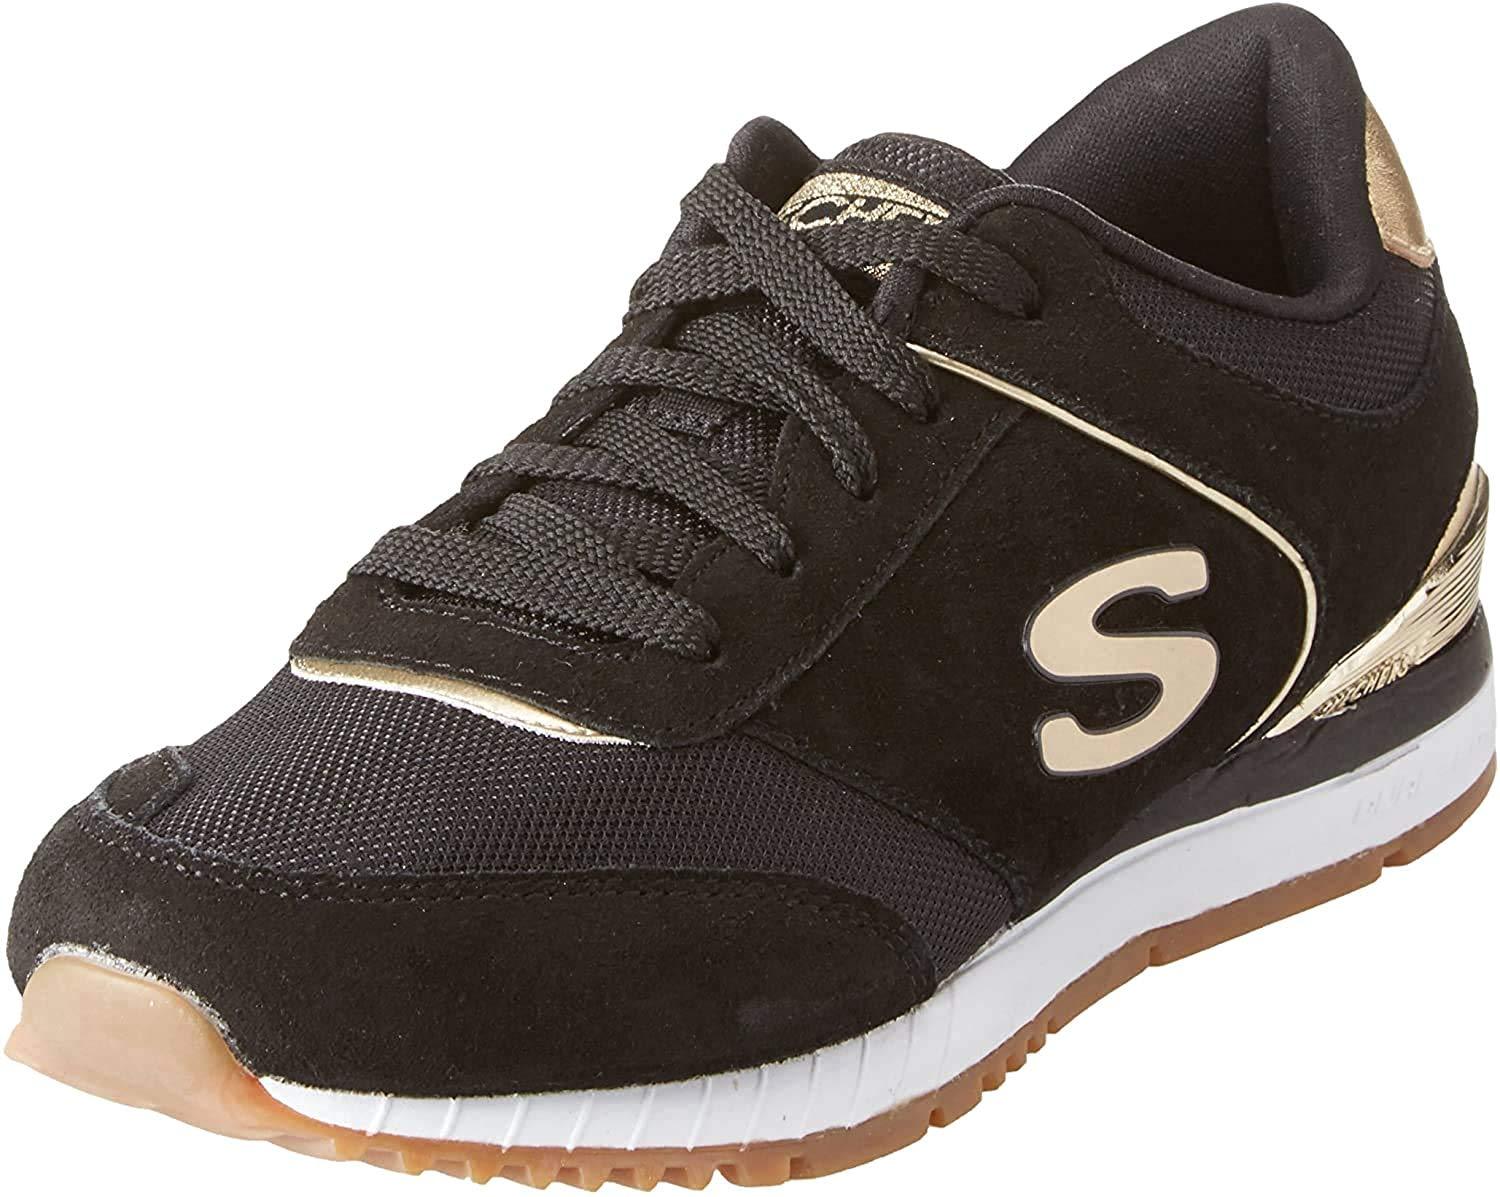 Skechers Suede Sunlite-revival Trainers in Black (Black) (Black) - Save 36%  - Lyst